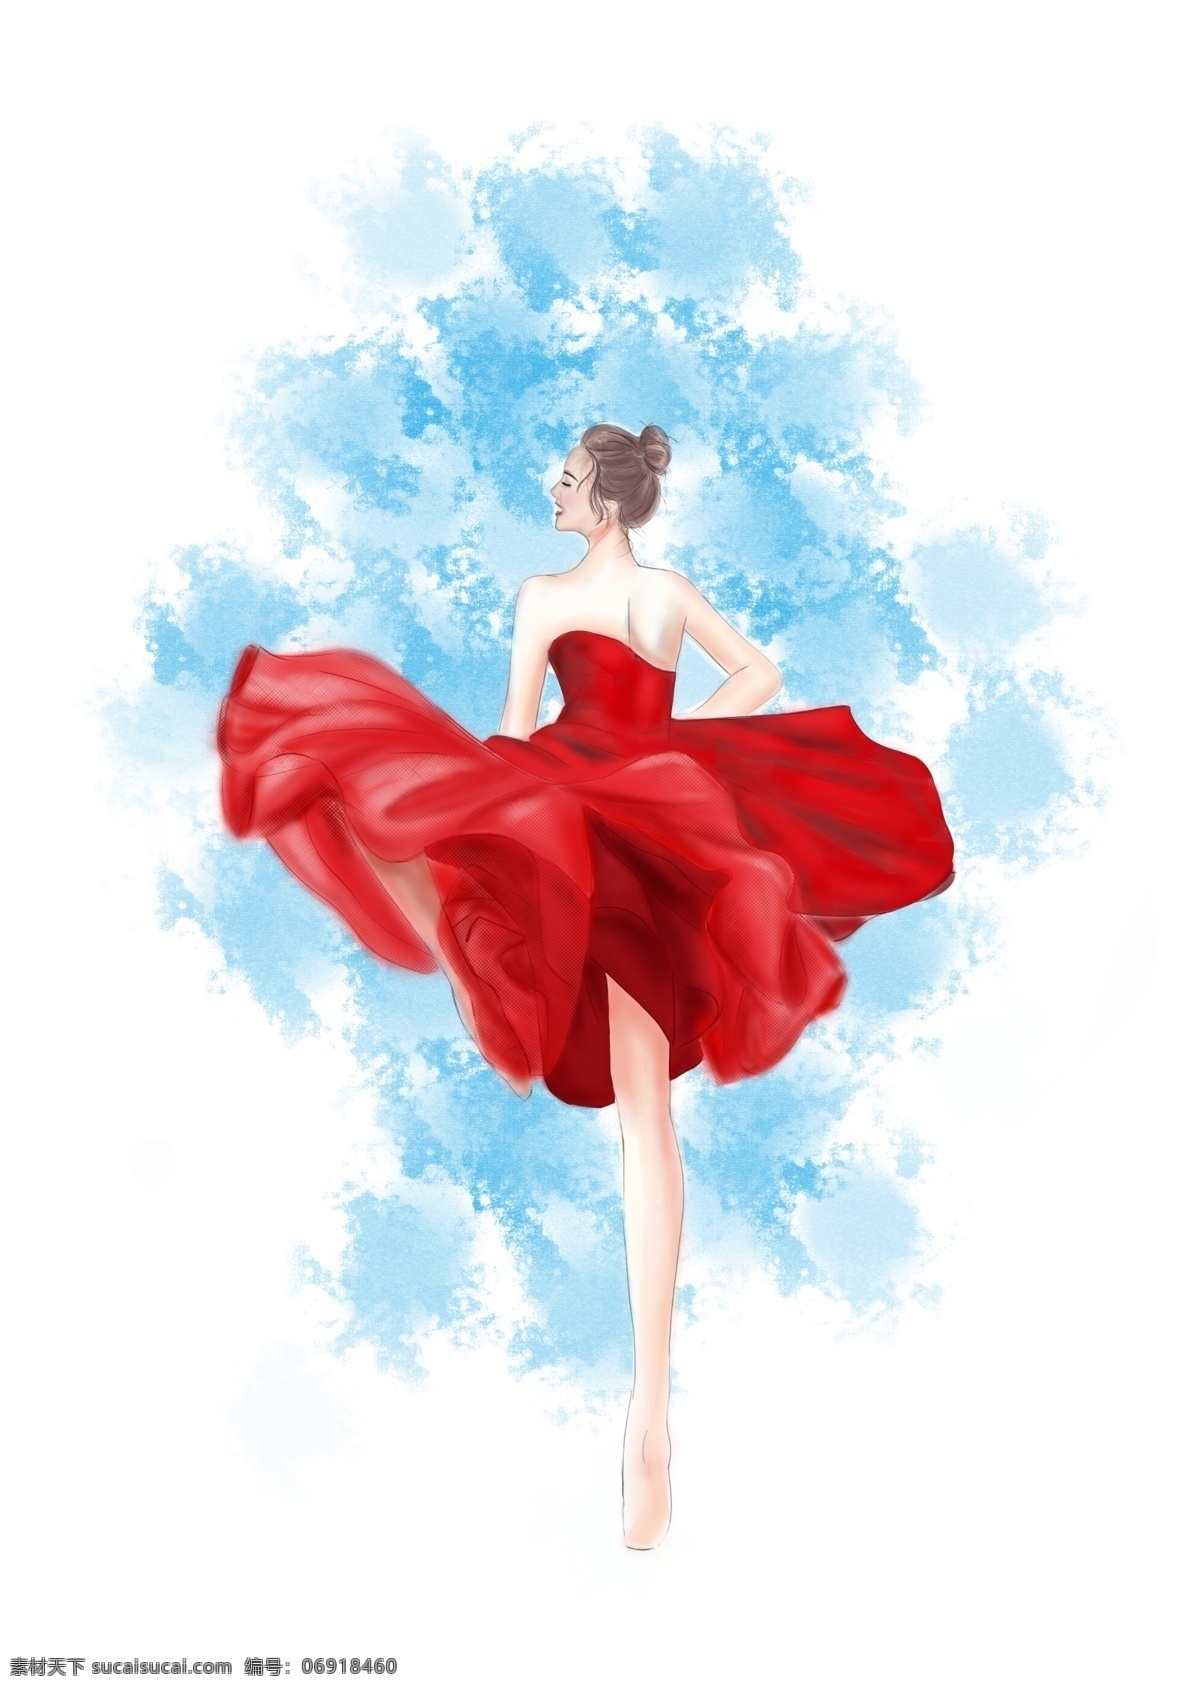 原创 手绘 起风 飞舞 红 裙 芭蕾舞 女孩 人物插画 时尚插画 红裙 psd分层 跳舞 现代舞 装饰 飞扬 裙摆